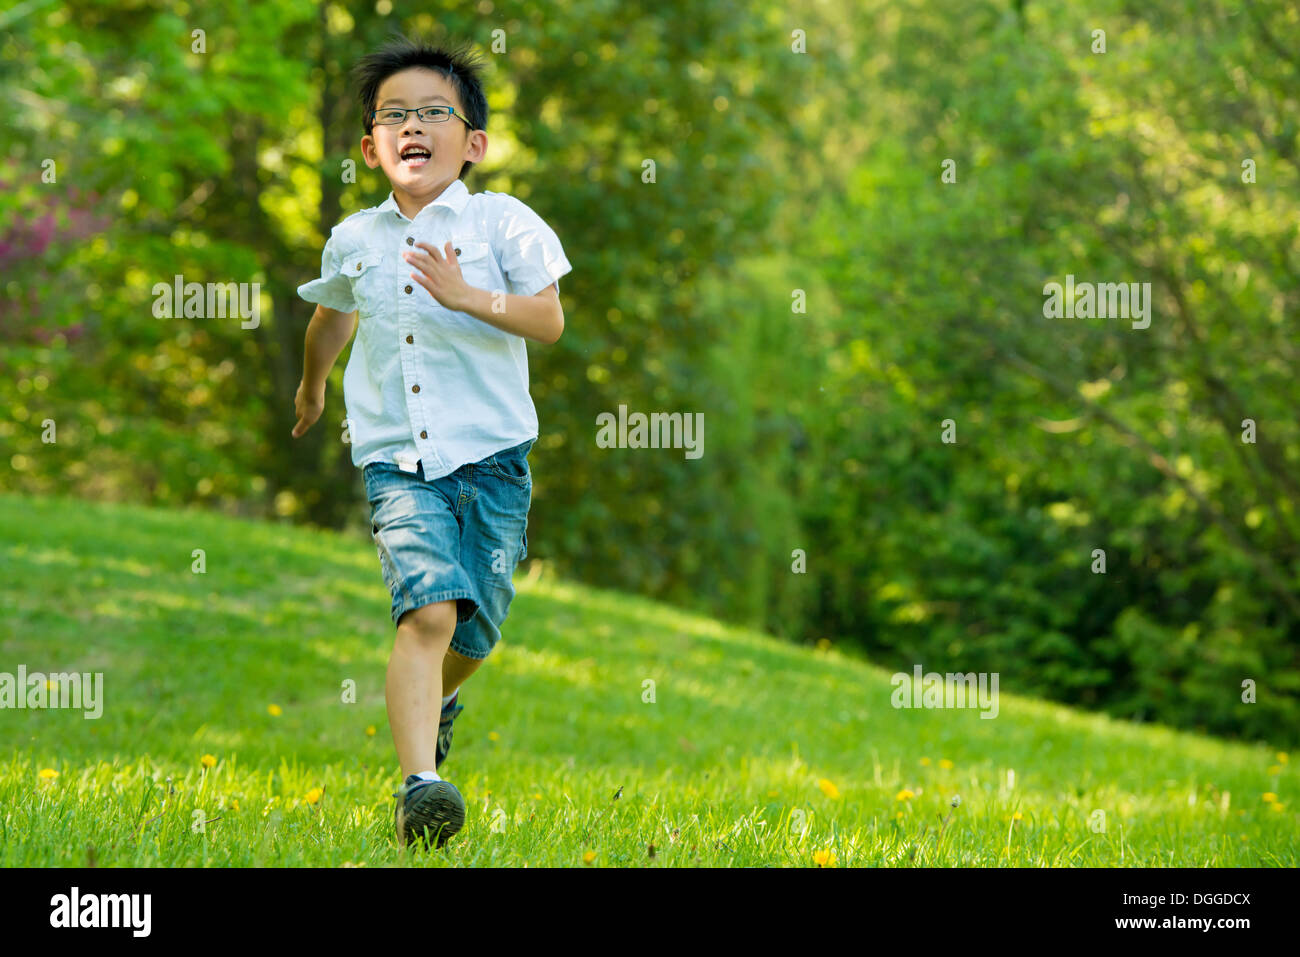 Niño corriendo sobre el césped Foto de stock